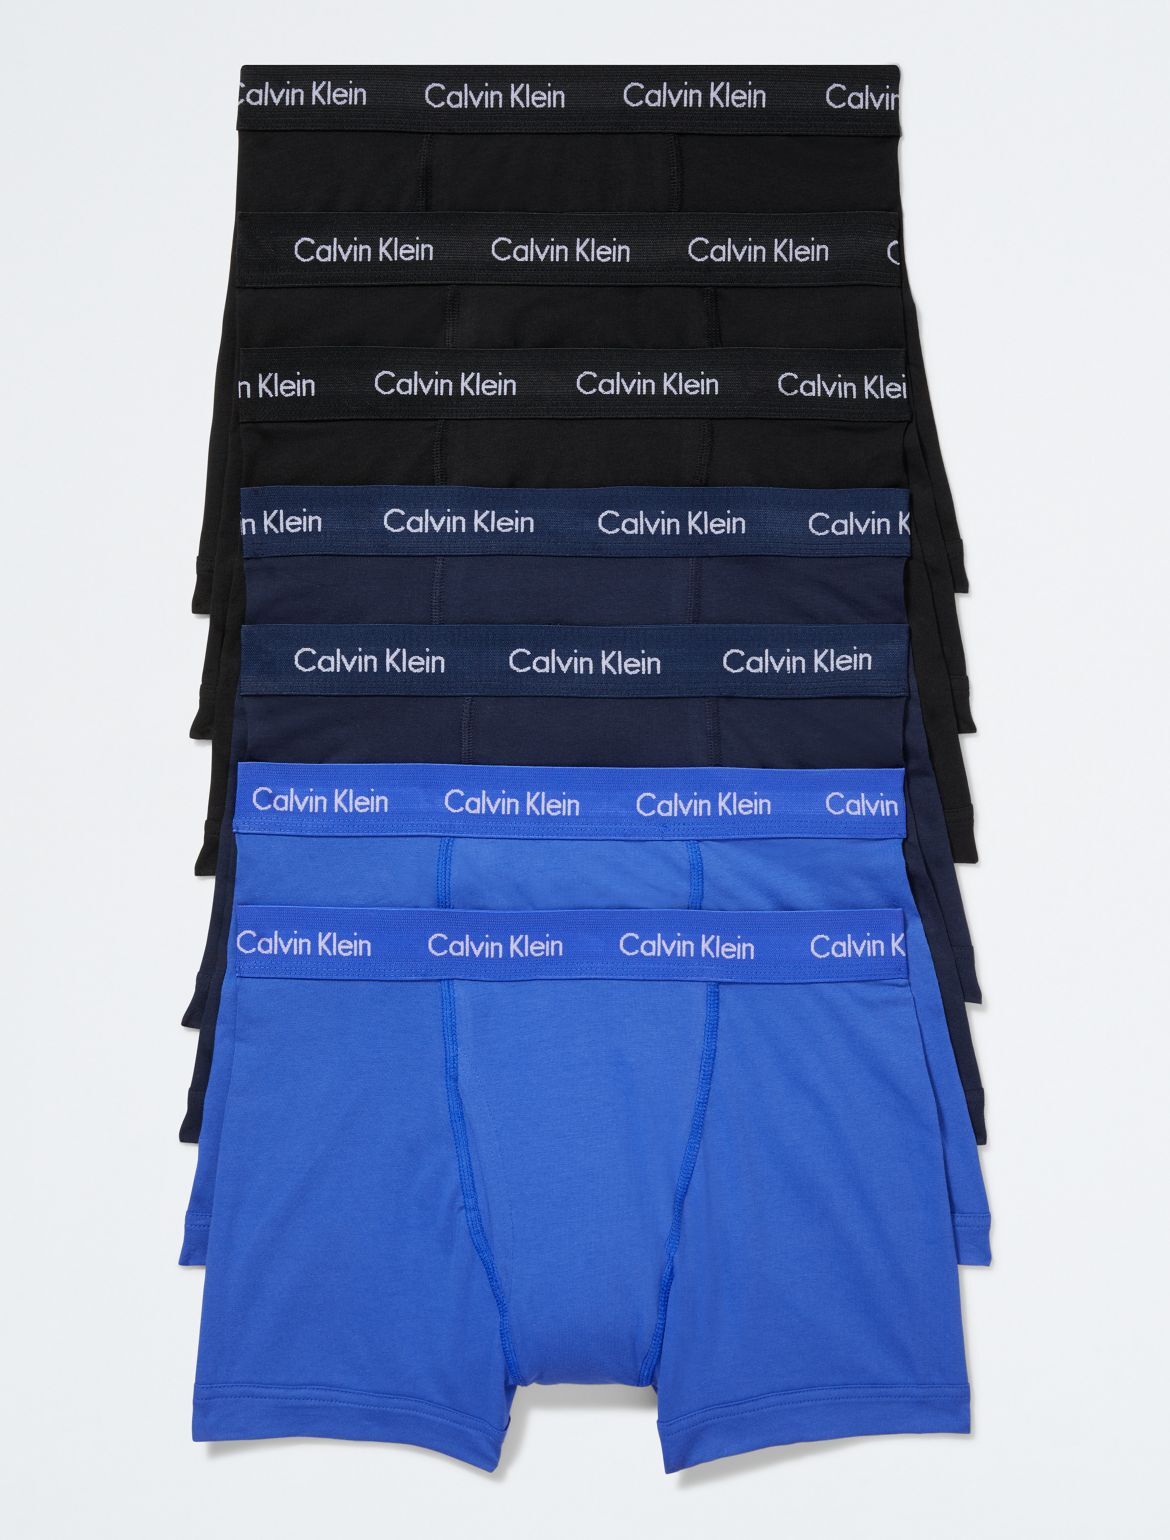 Calvin Klein Men's Cotton Stretch 7-Pack Trunk - Grey - XL